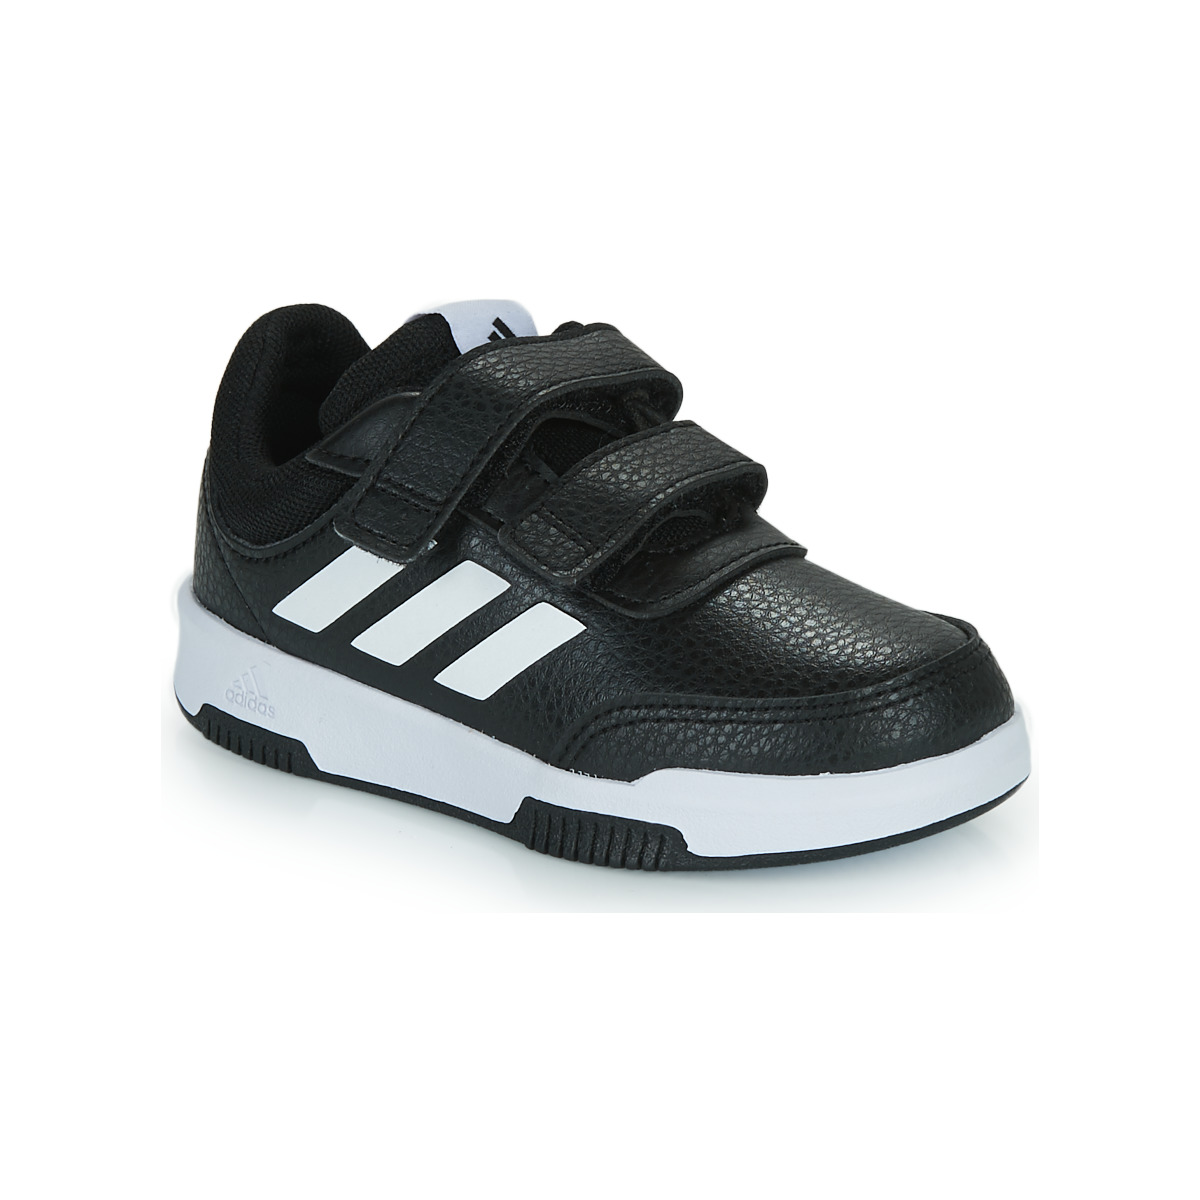 Sapatos Criança Sapatilhas Adidas Sportswear Tensaur Sport 2.0 C Preto / Branco